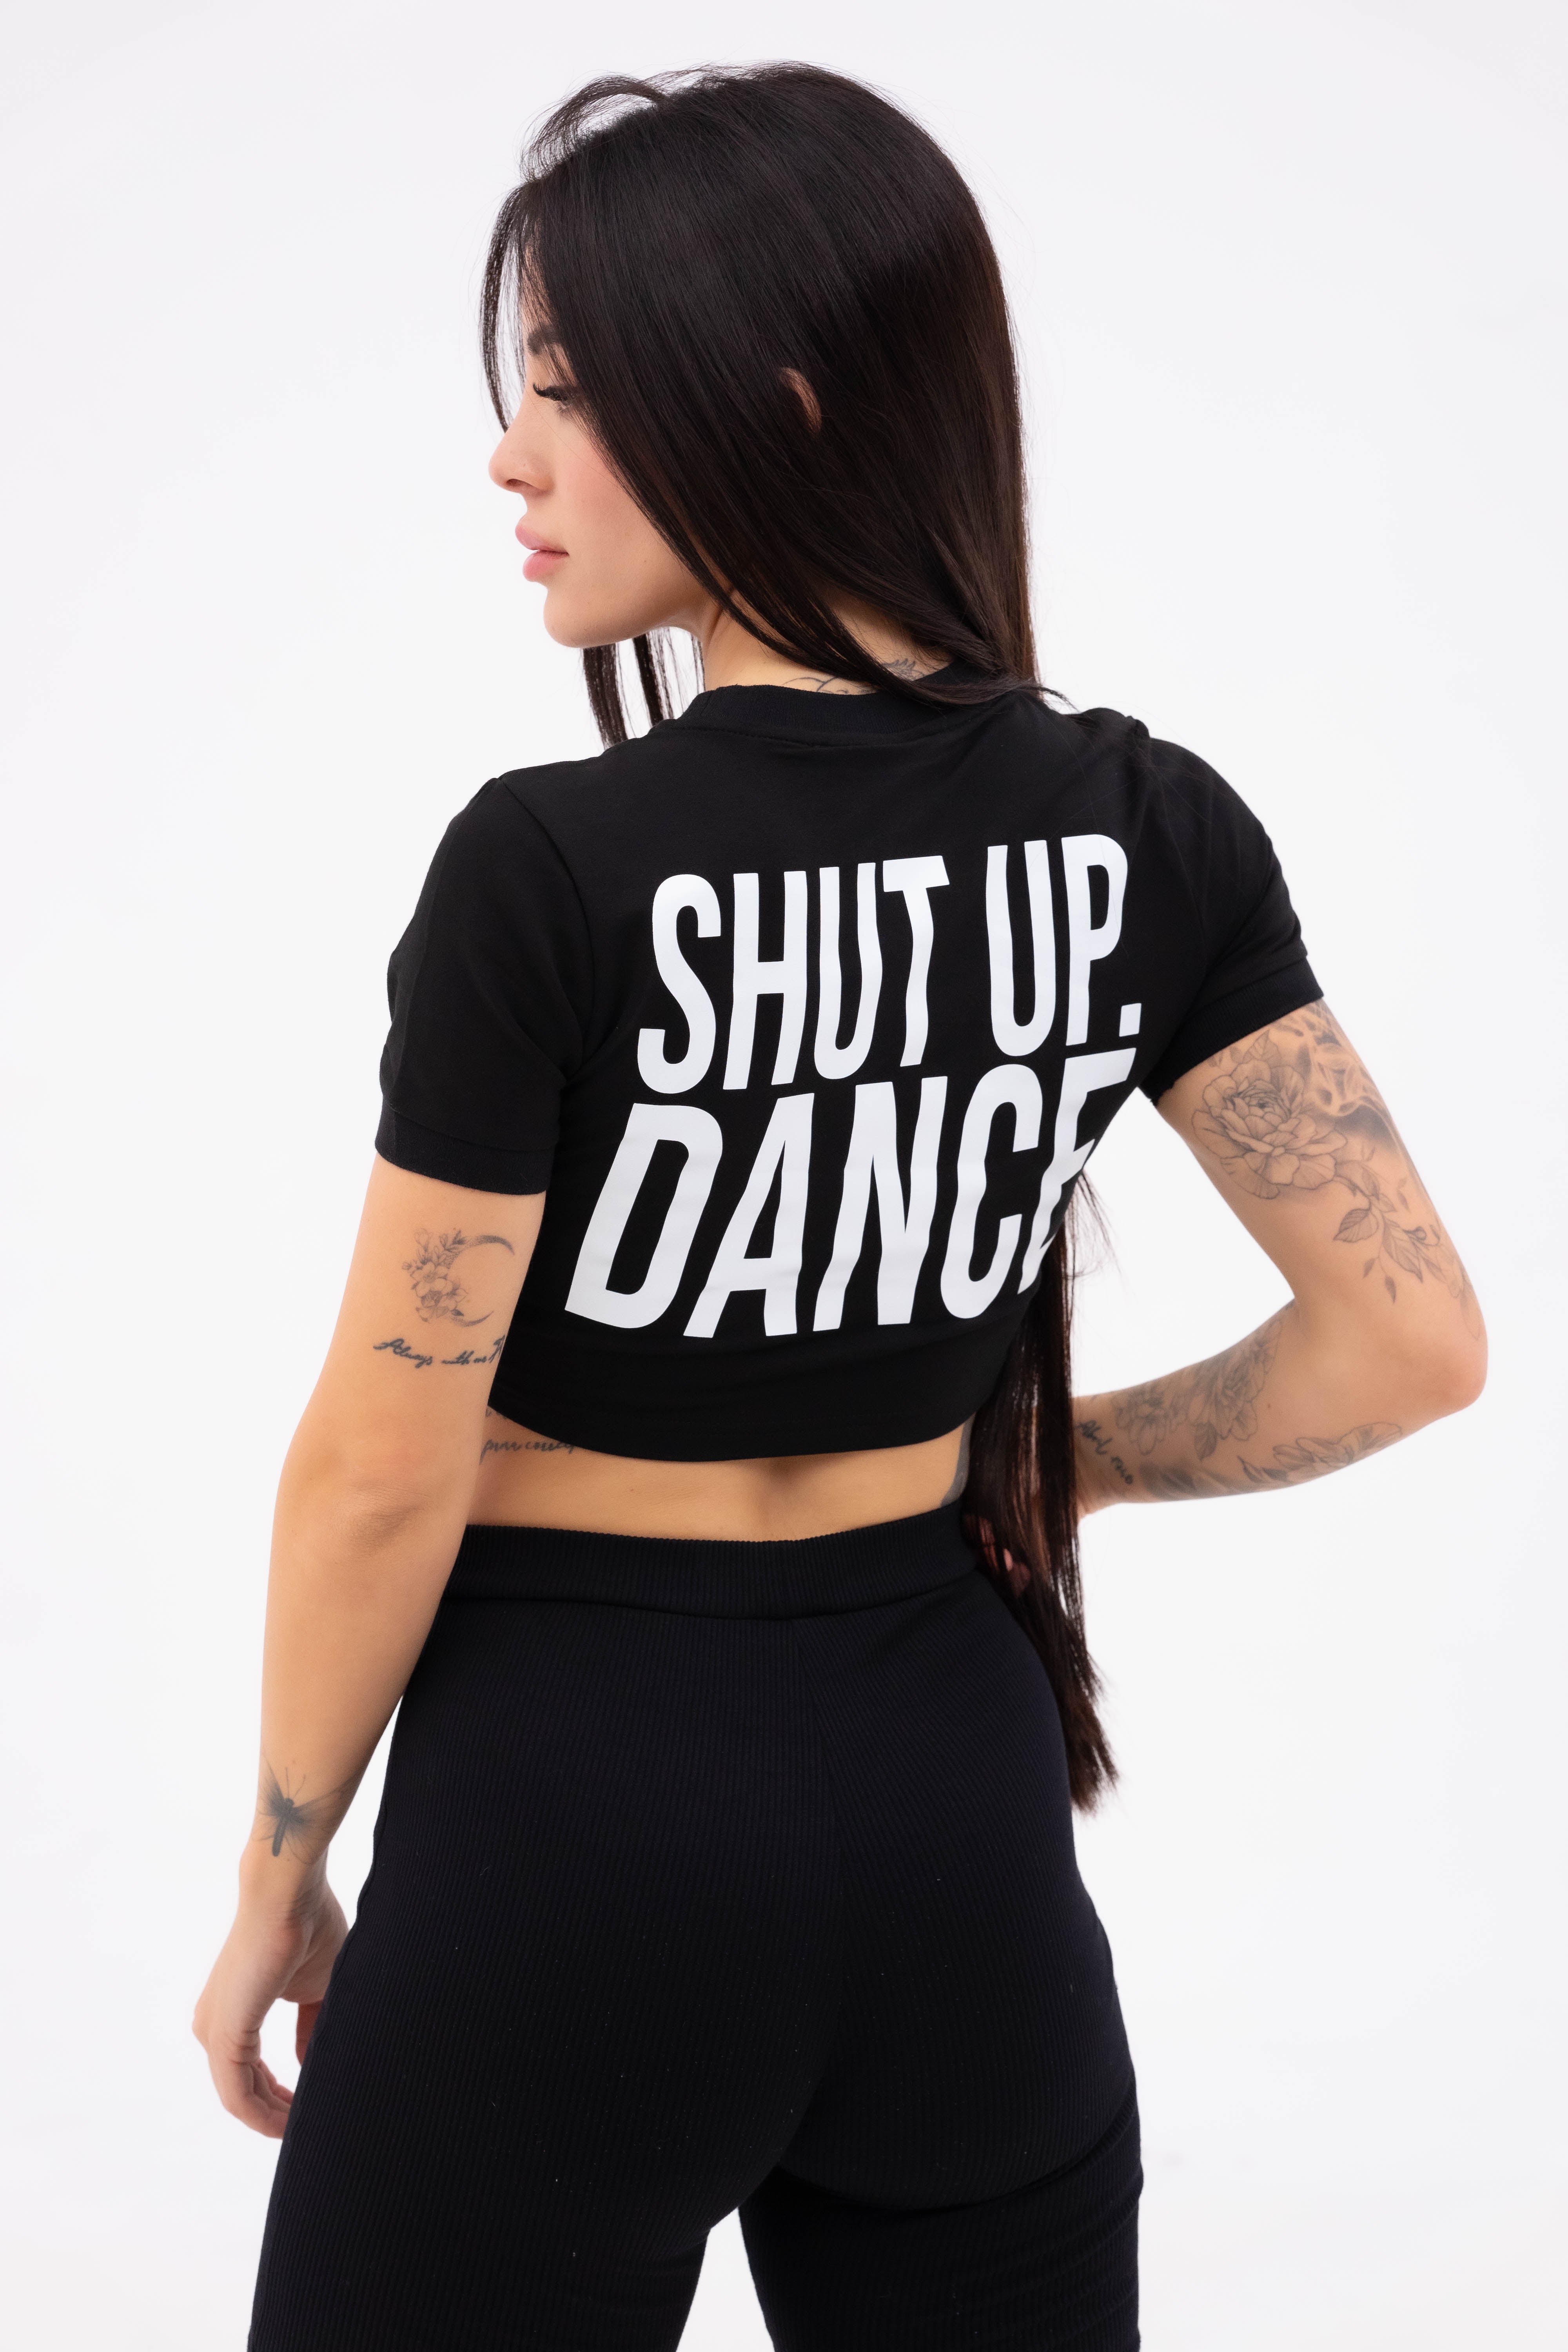 Shut Up Dance Ermes Dance Women's T-shirt